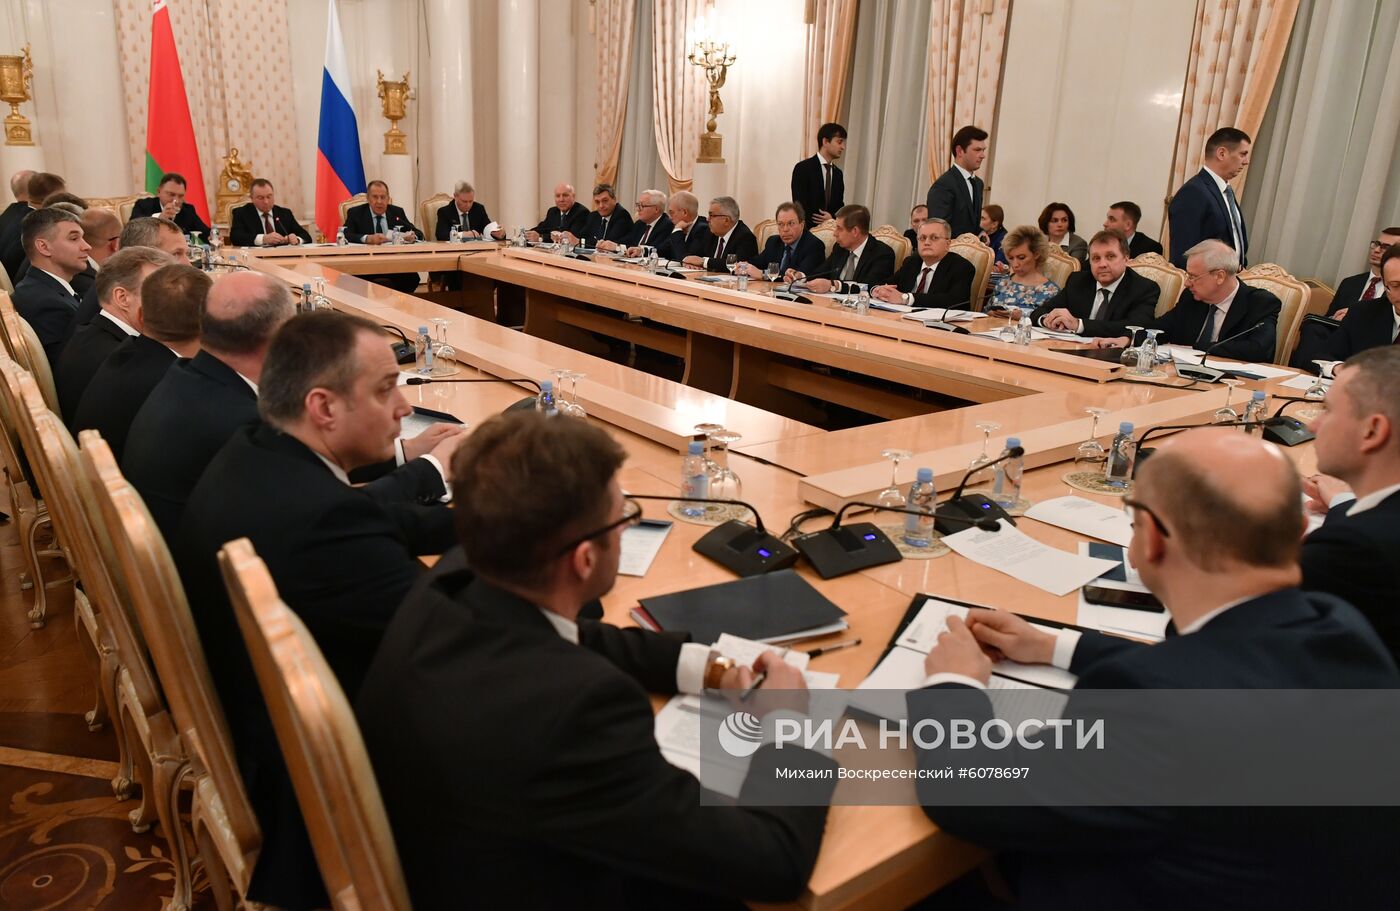 Совместное заседание коллегий МИД России и Белоруссии